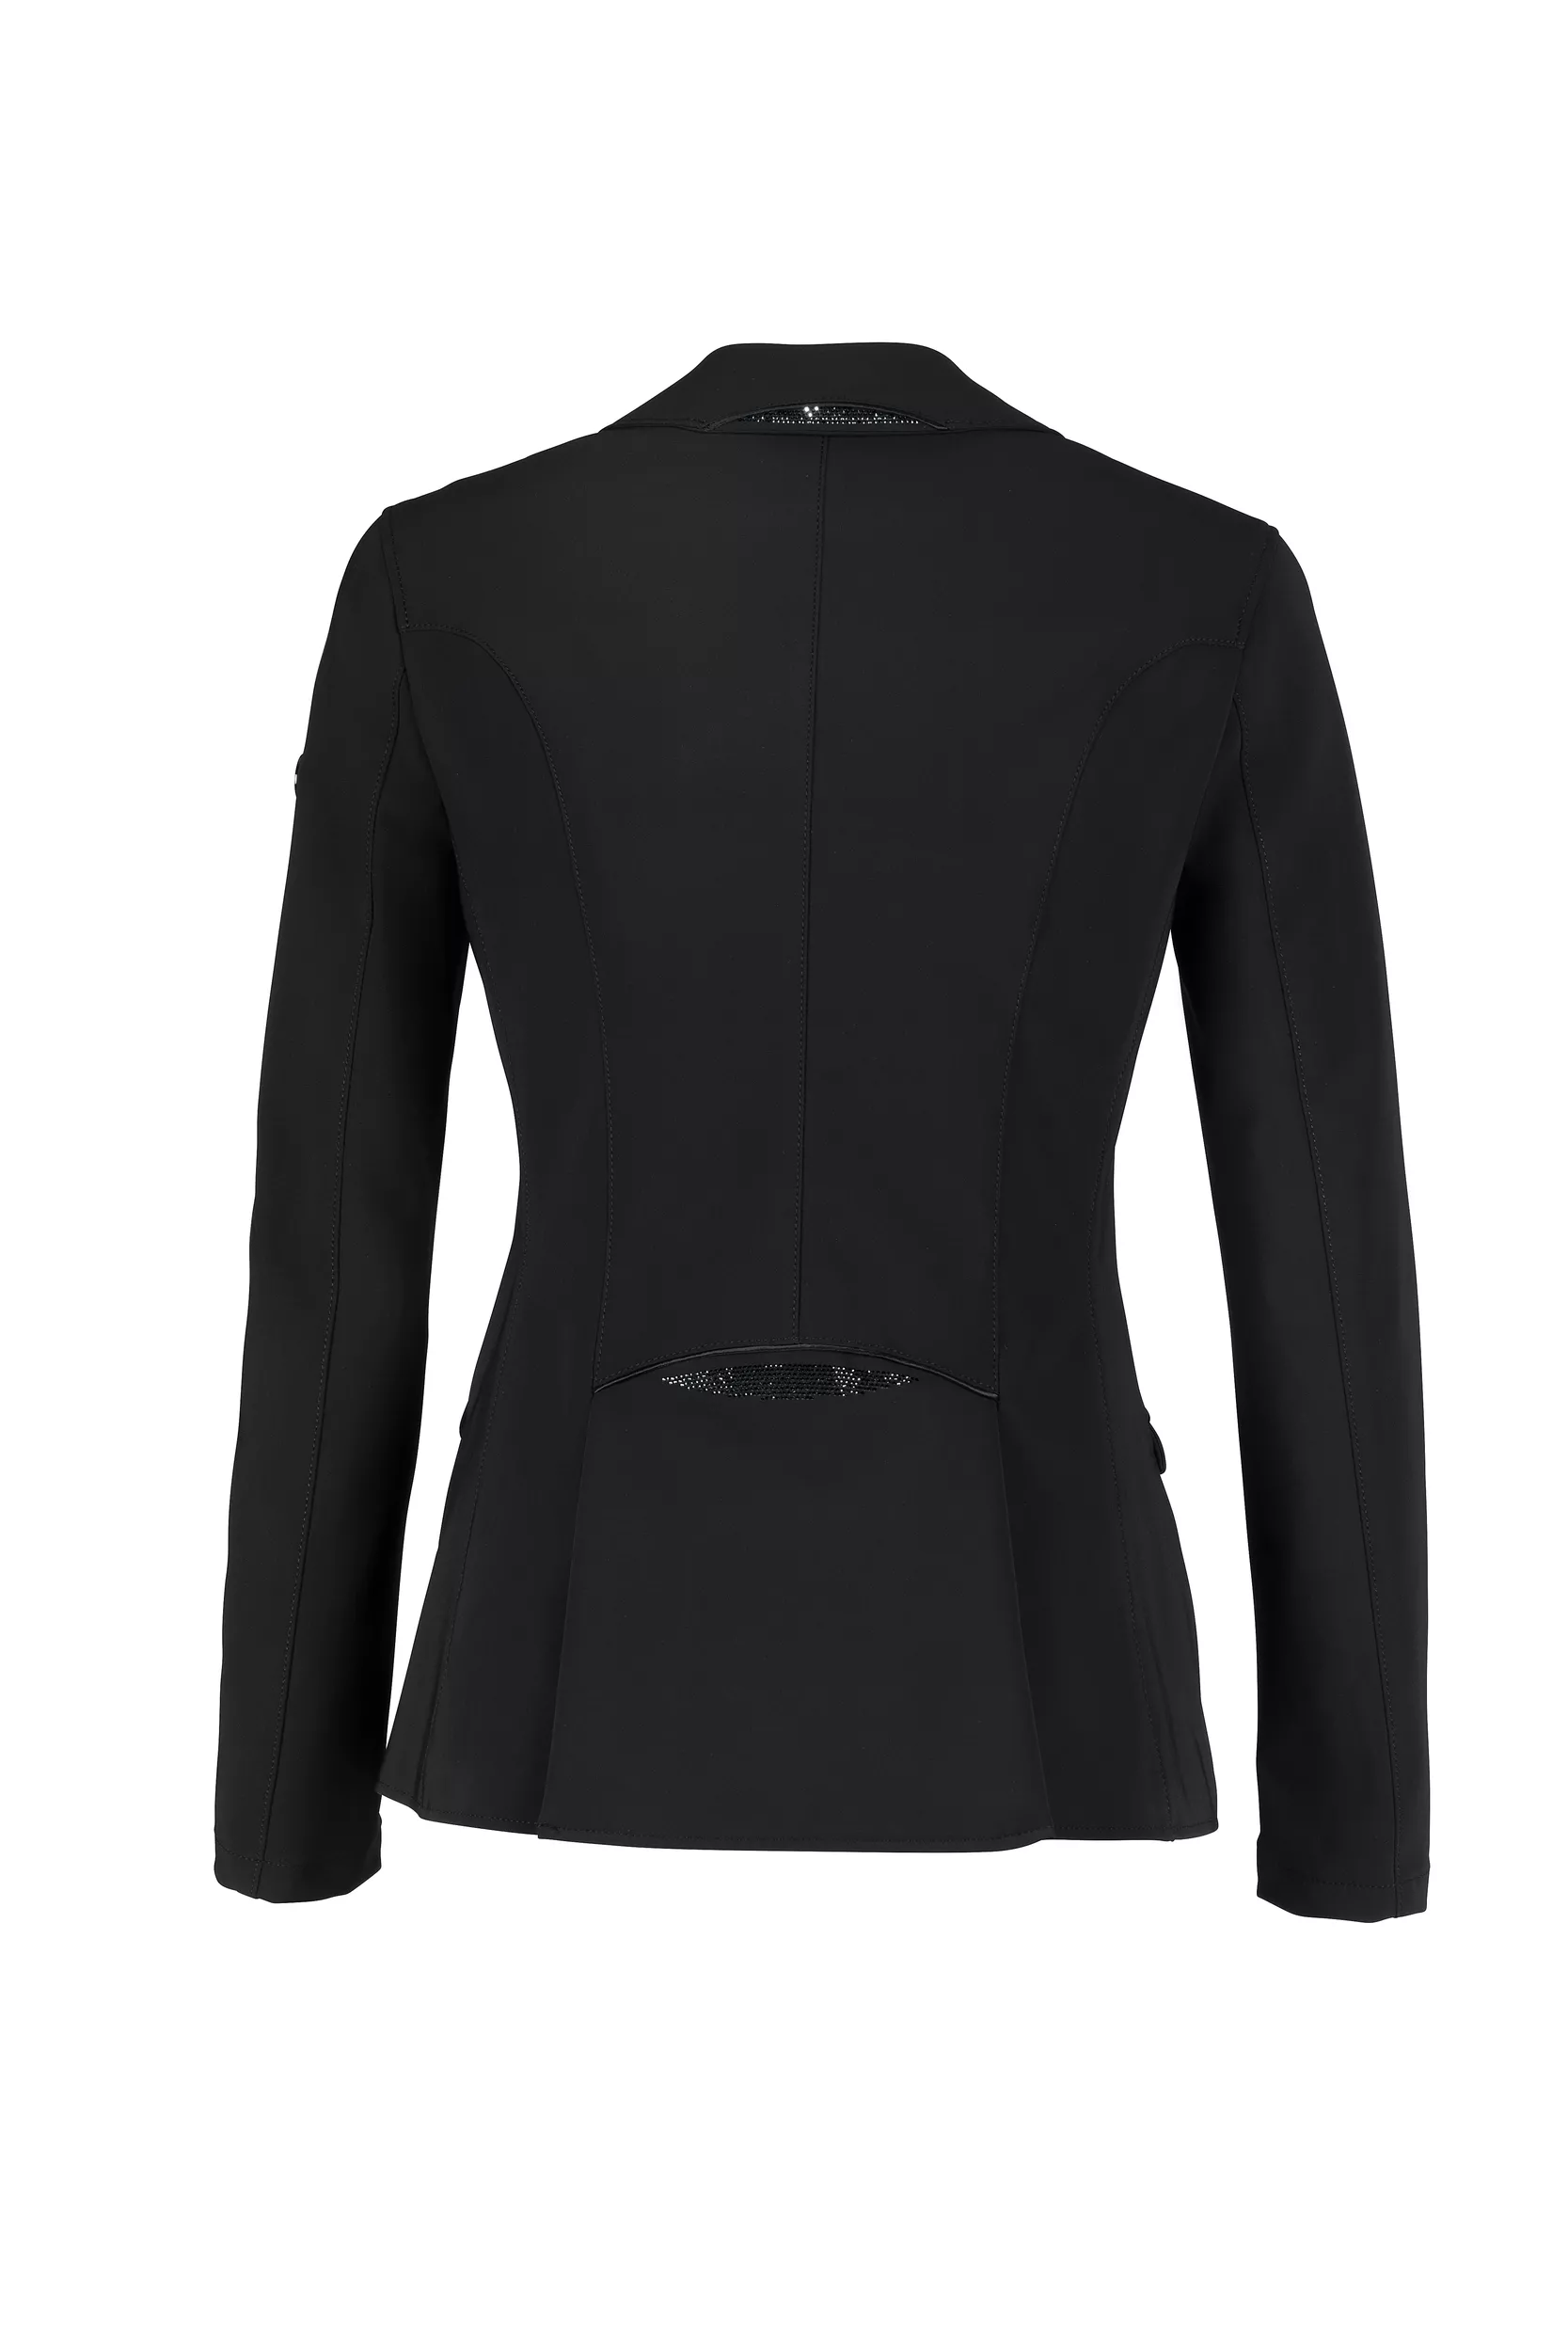 ISALIE Veste de compétition pour femmes (veste), SPORTSWEAR 22, noir